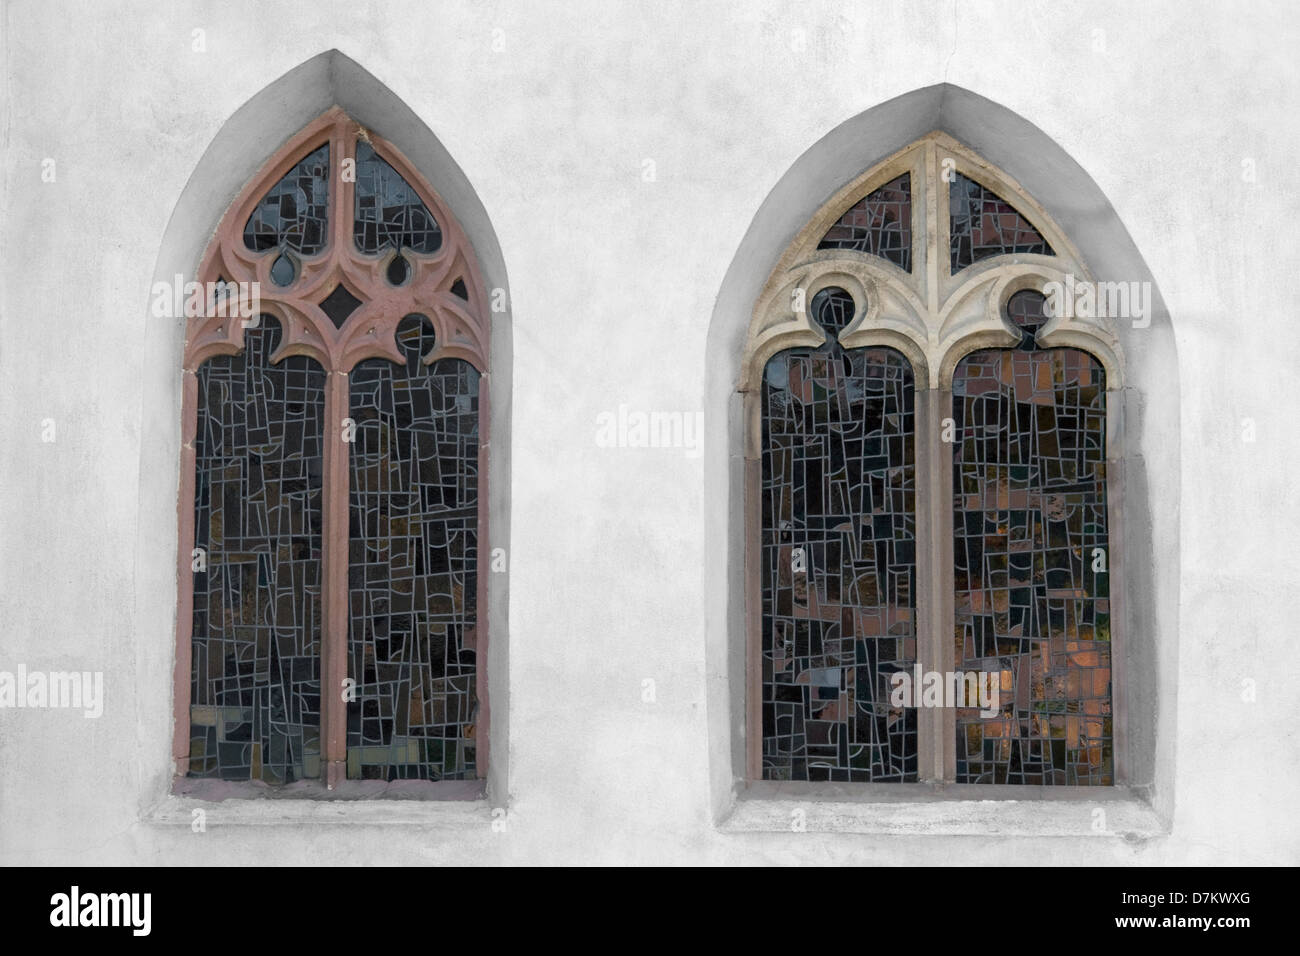 im Freien Schuss zeigt zwei alte Kirchenfenster Stockfoto